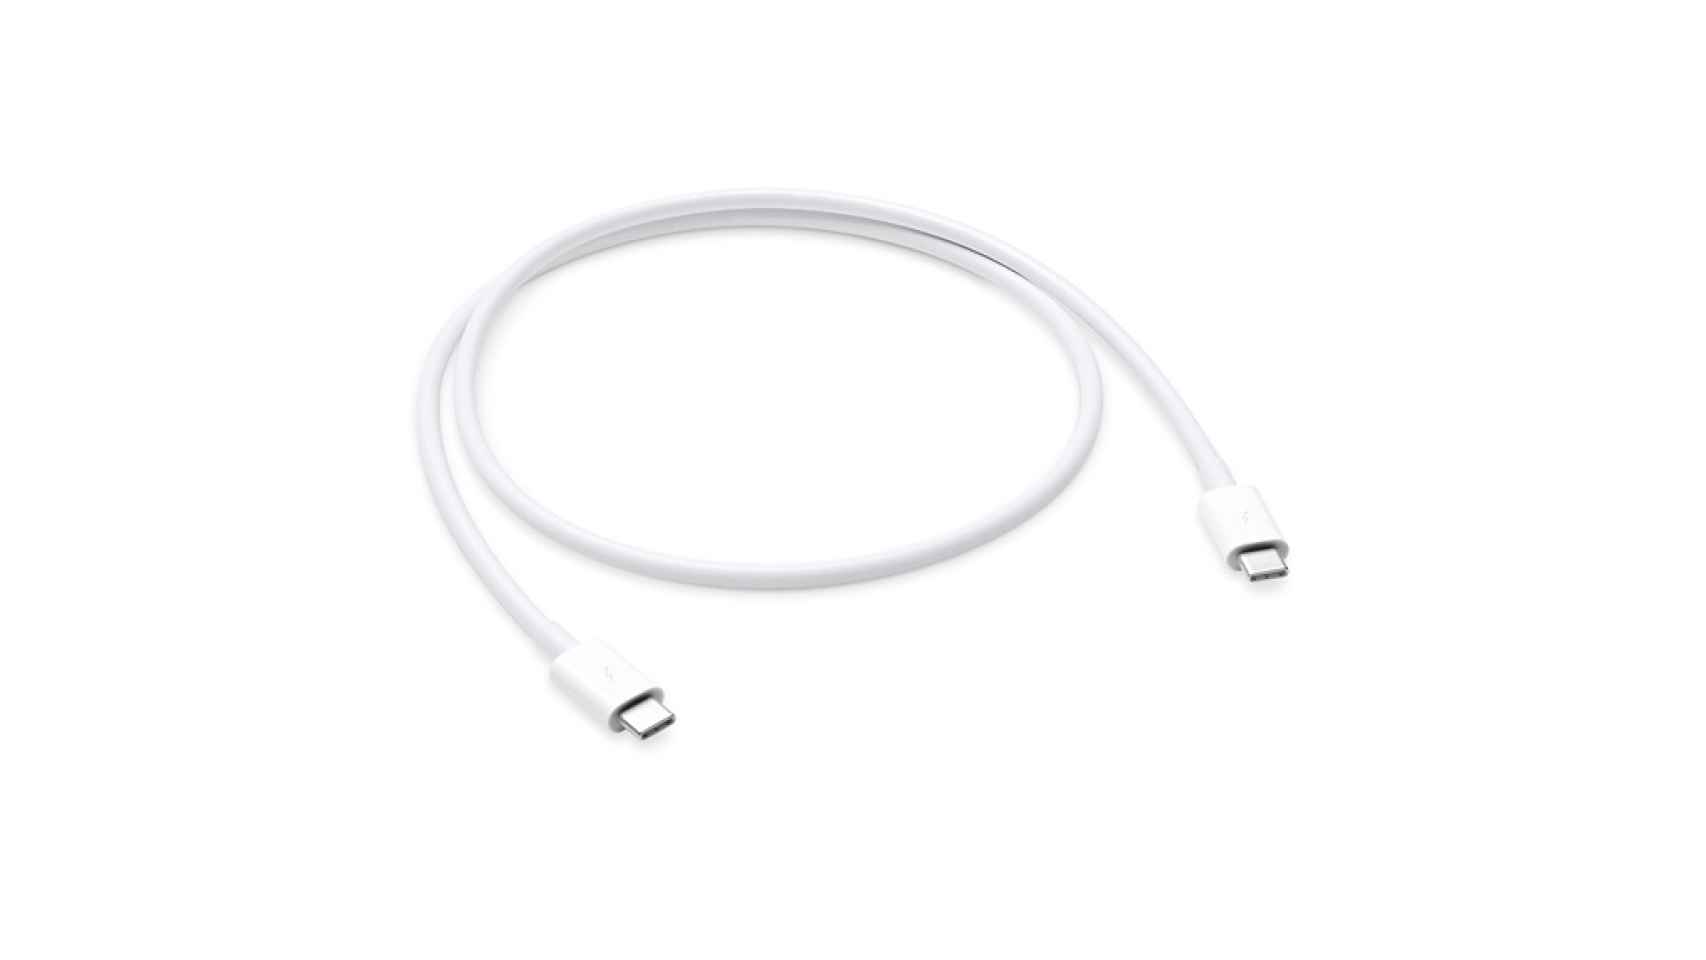 Cable barato Thunderbolt 3 de Apple.